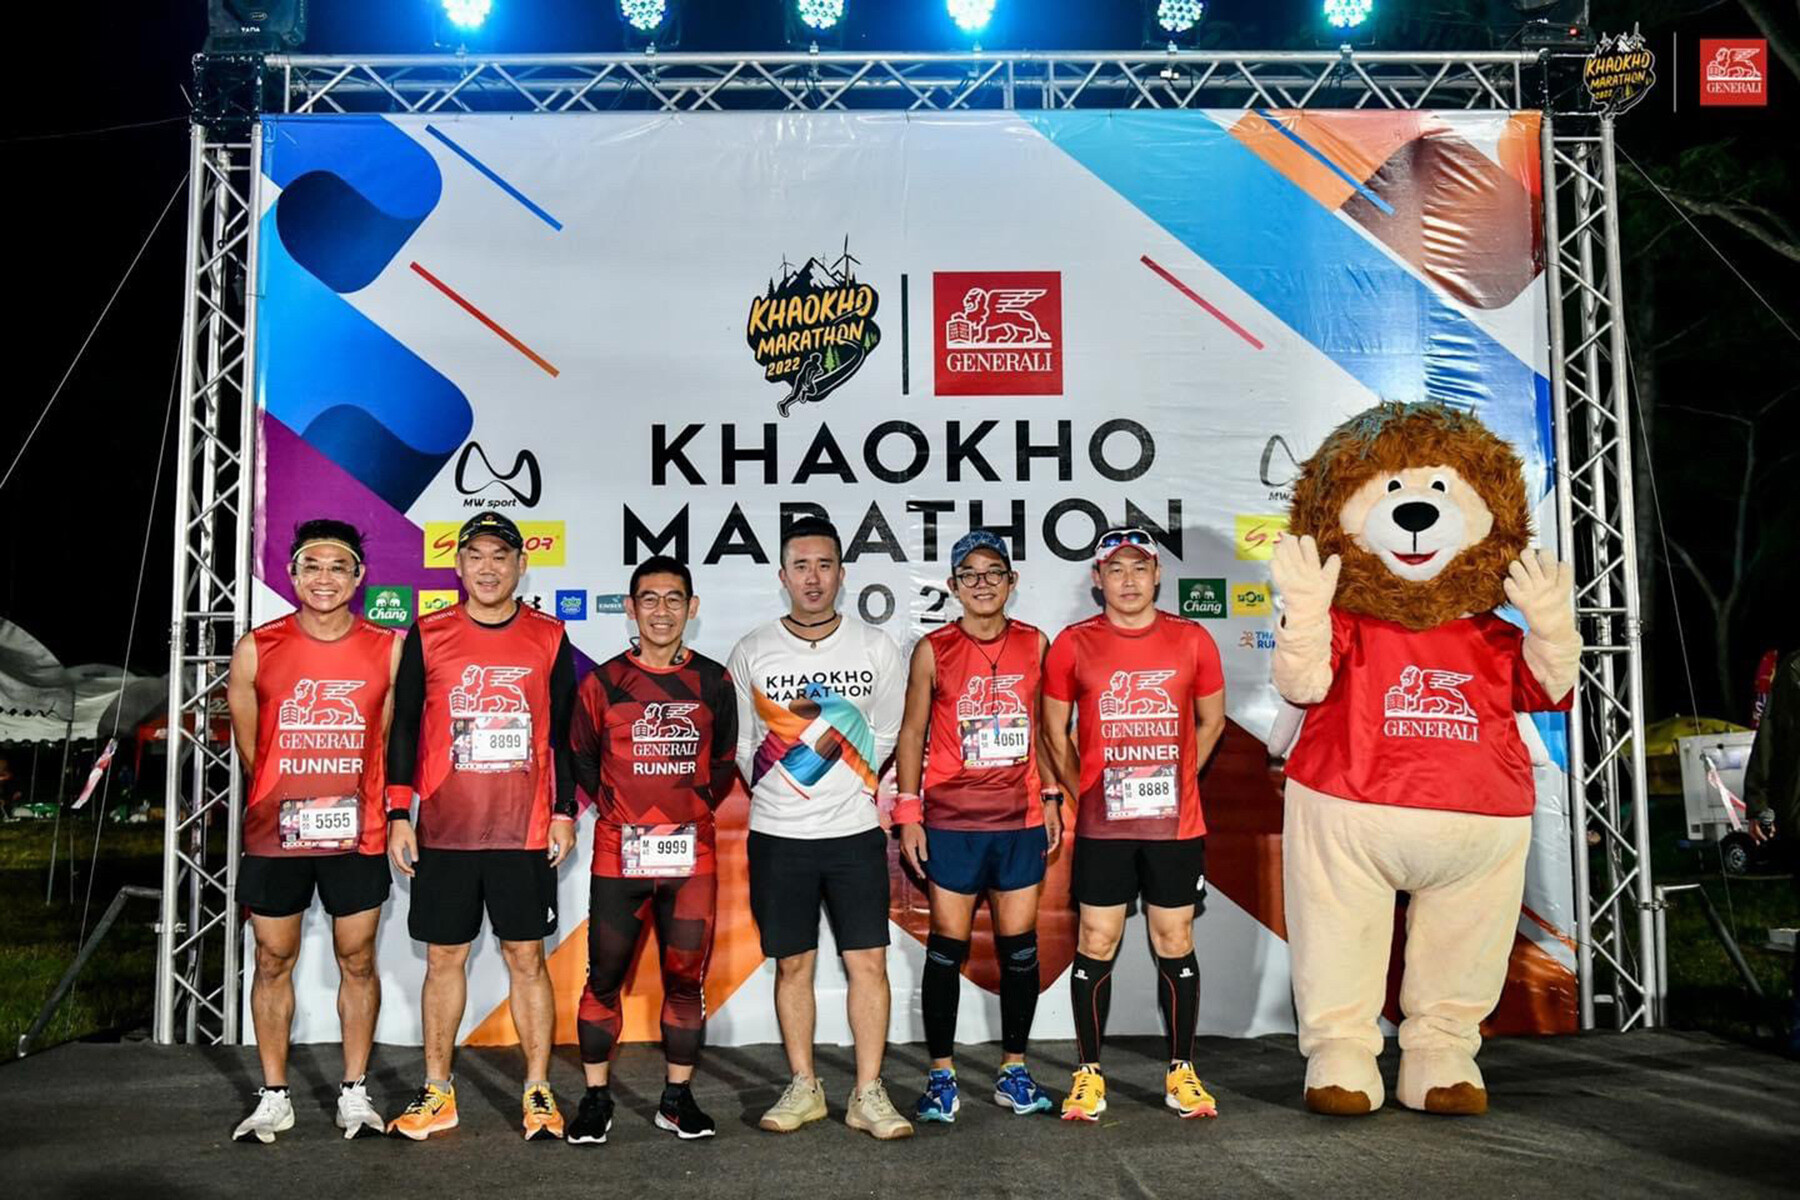 เจนเนอราลี่ เอาใจสายคนรักสุขภาพ สนับสนุนงาน "Khaokho Marathon 2022" ต่อเนื่องเป็นปีที่ 3